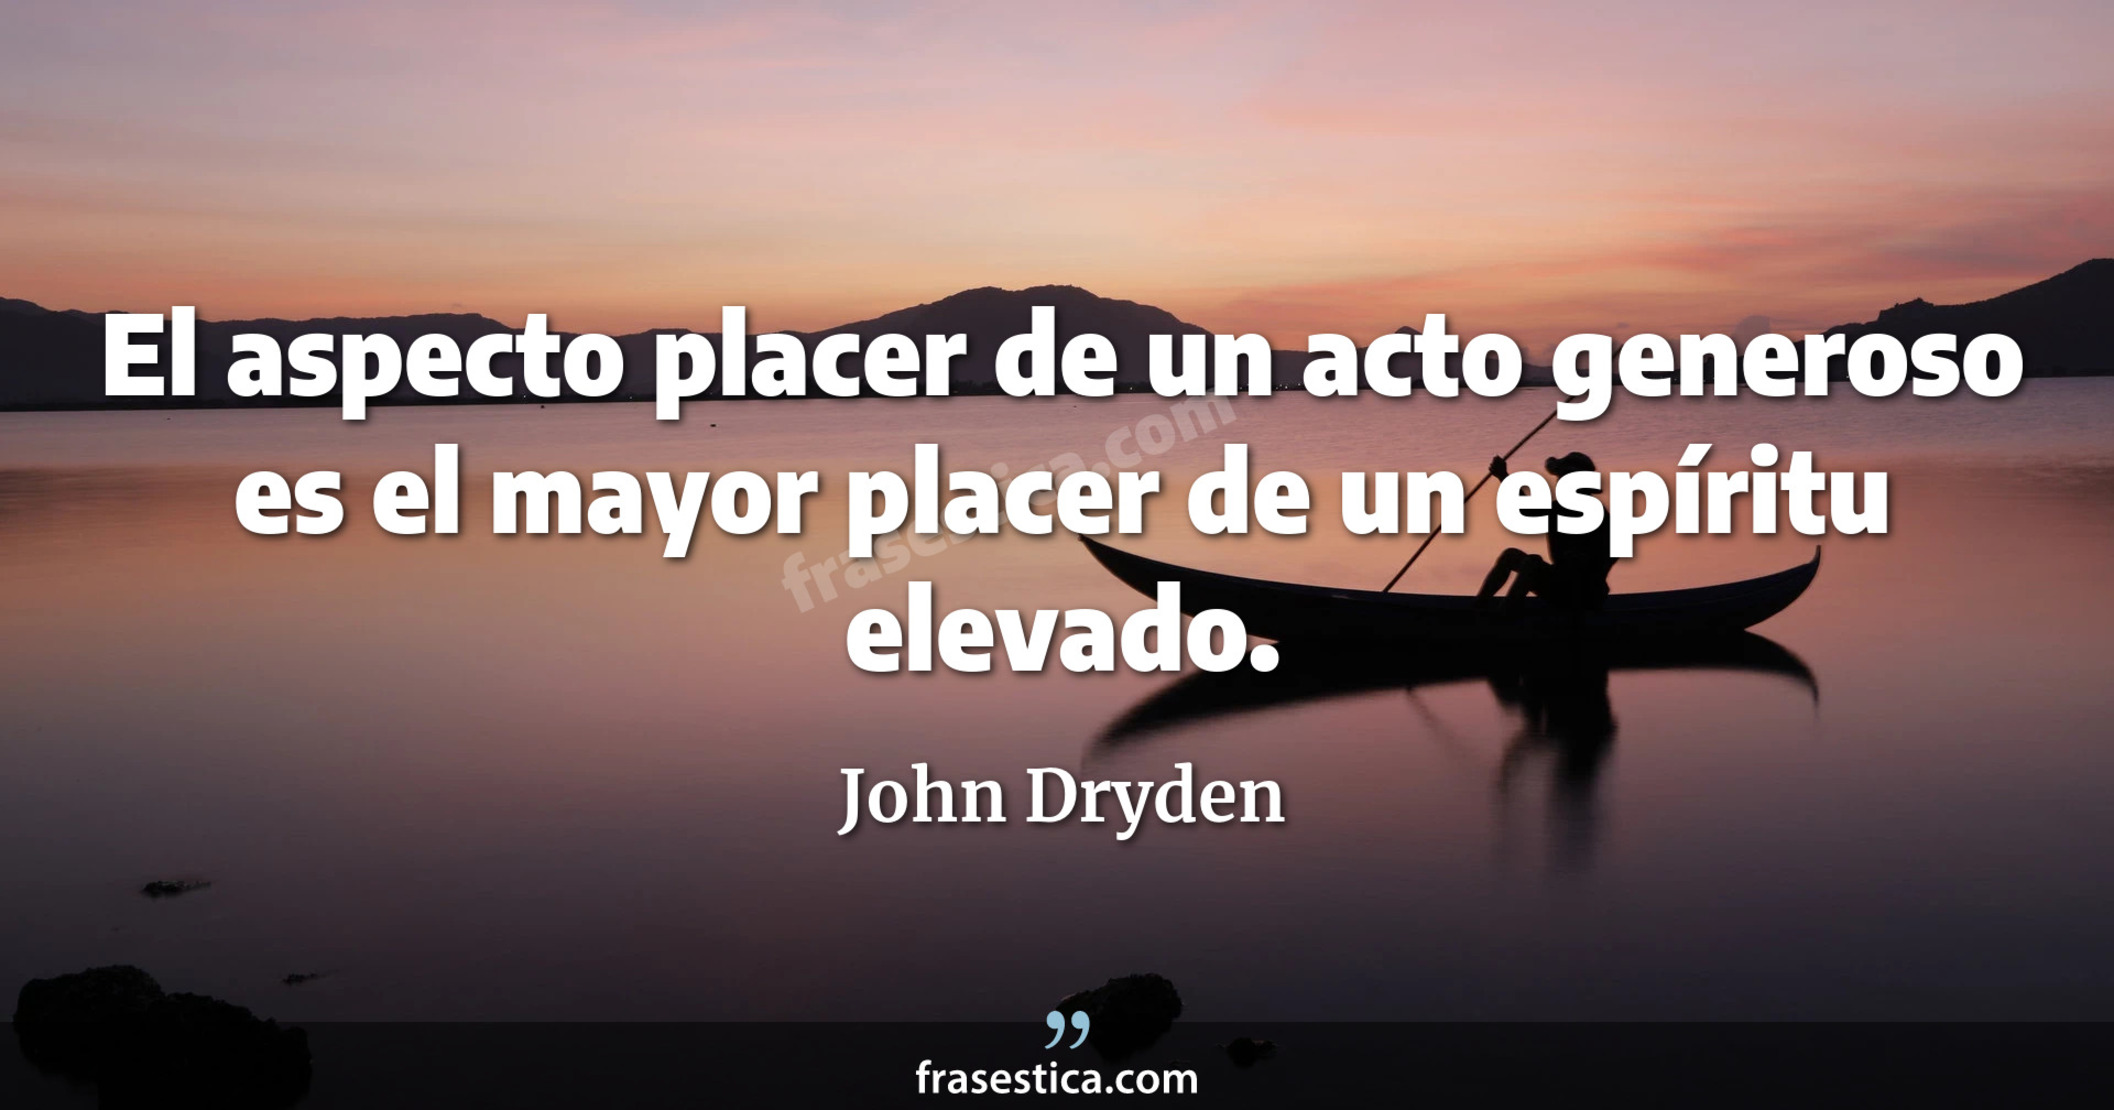 El aspecto placer de un acto generoso es el mayor placer de un espíritu elevado. - John Dryden